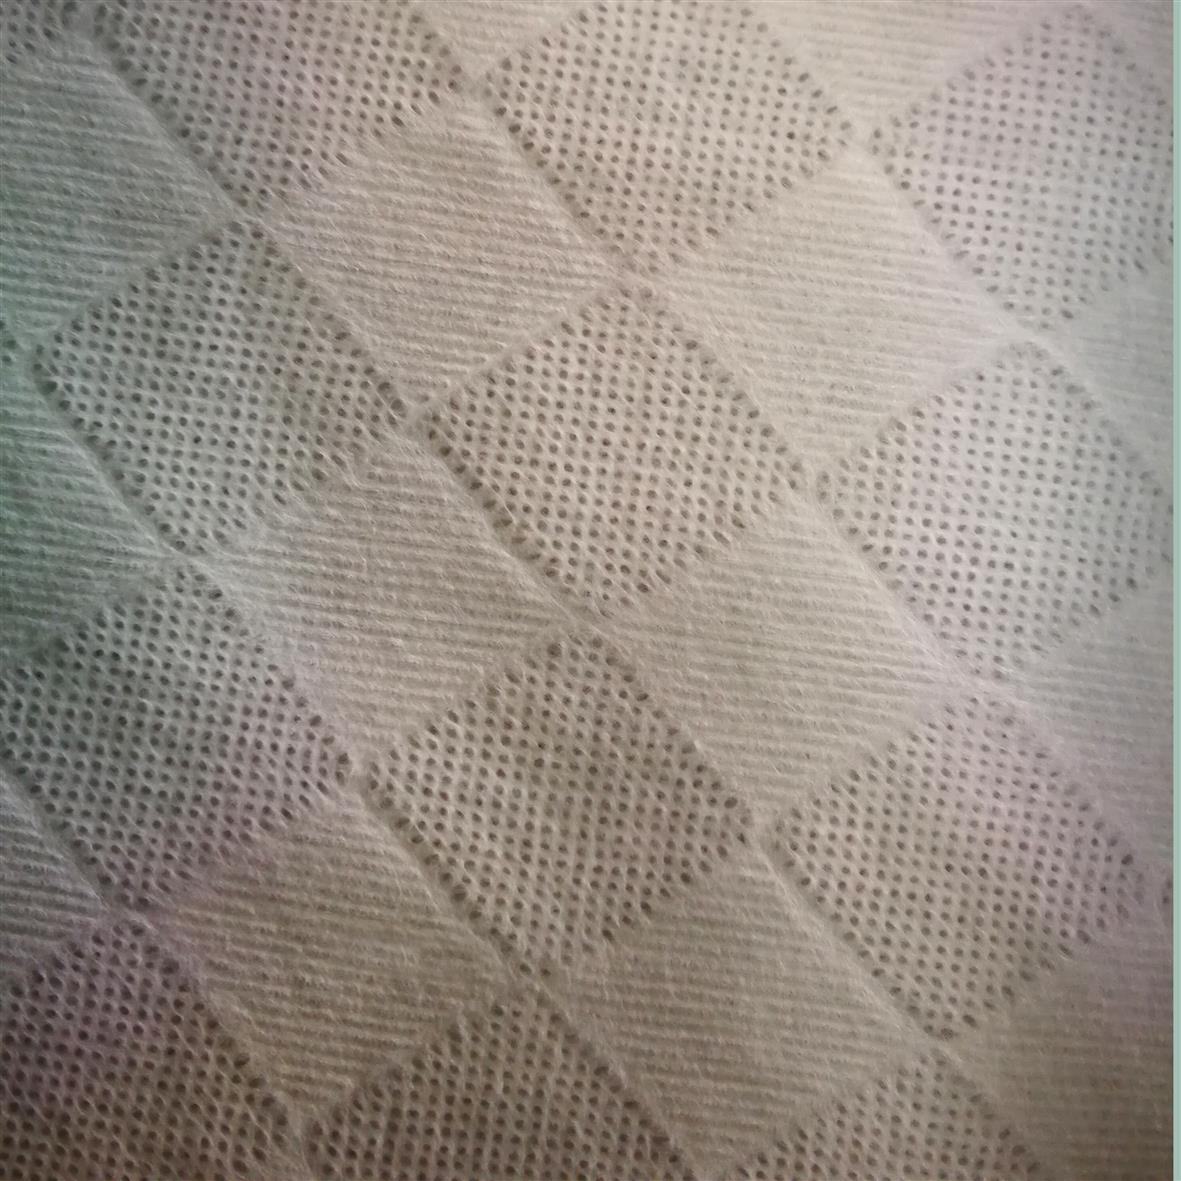 水刺布 特种竹纤维水刺无纺布制造厂 竹纤维珍珠纹湿巾布